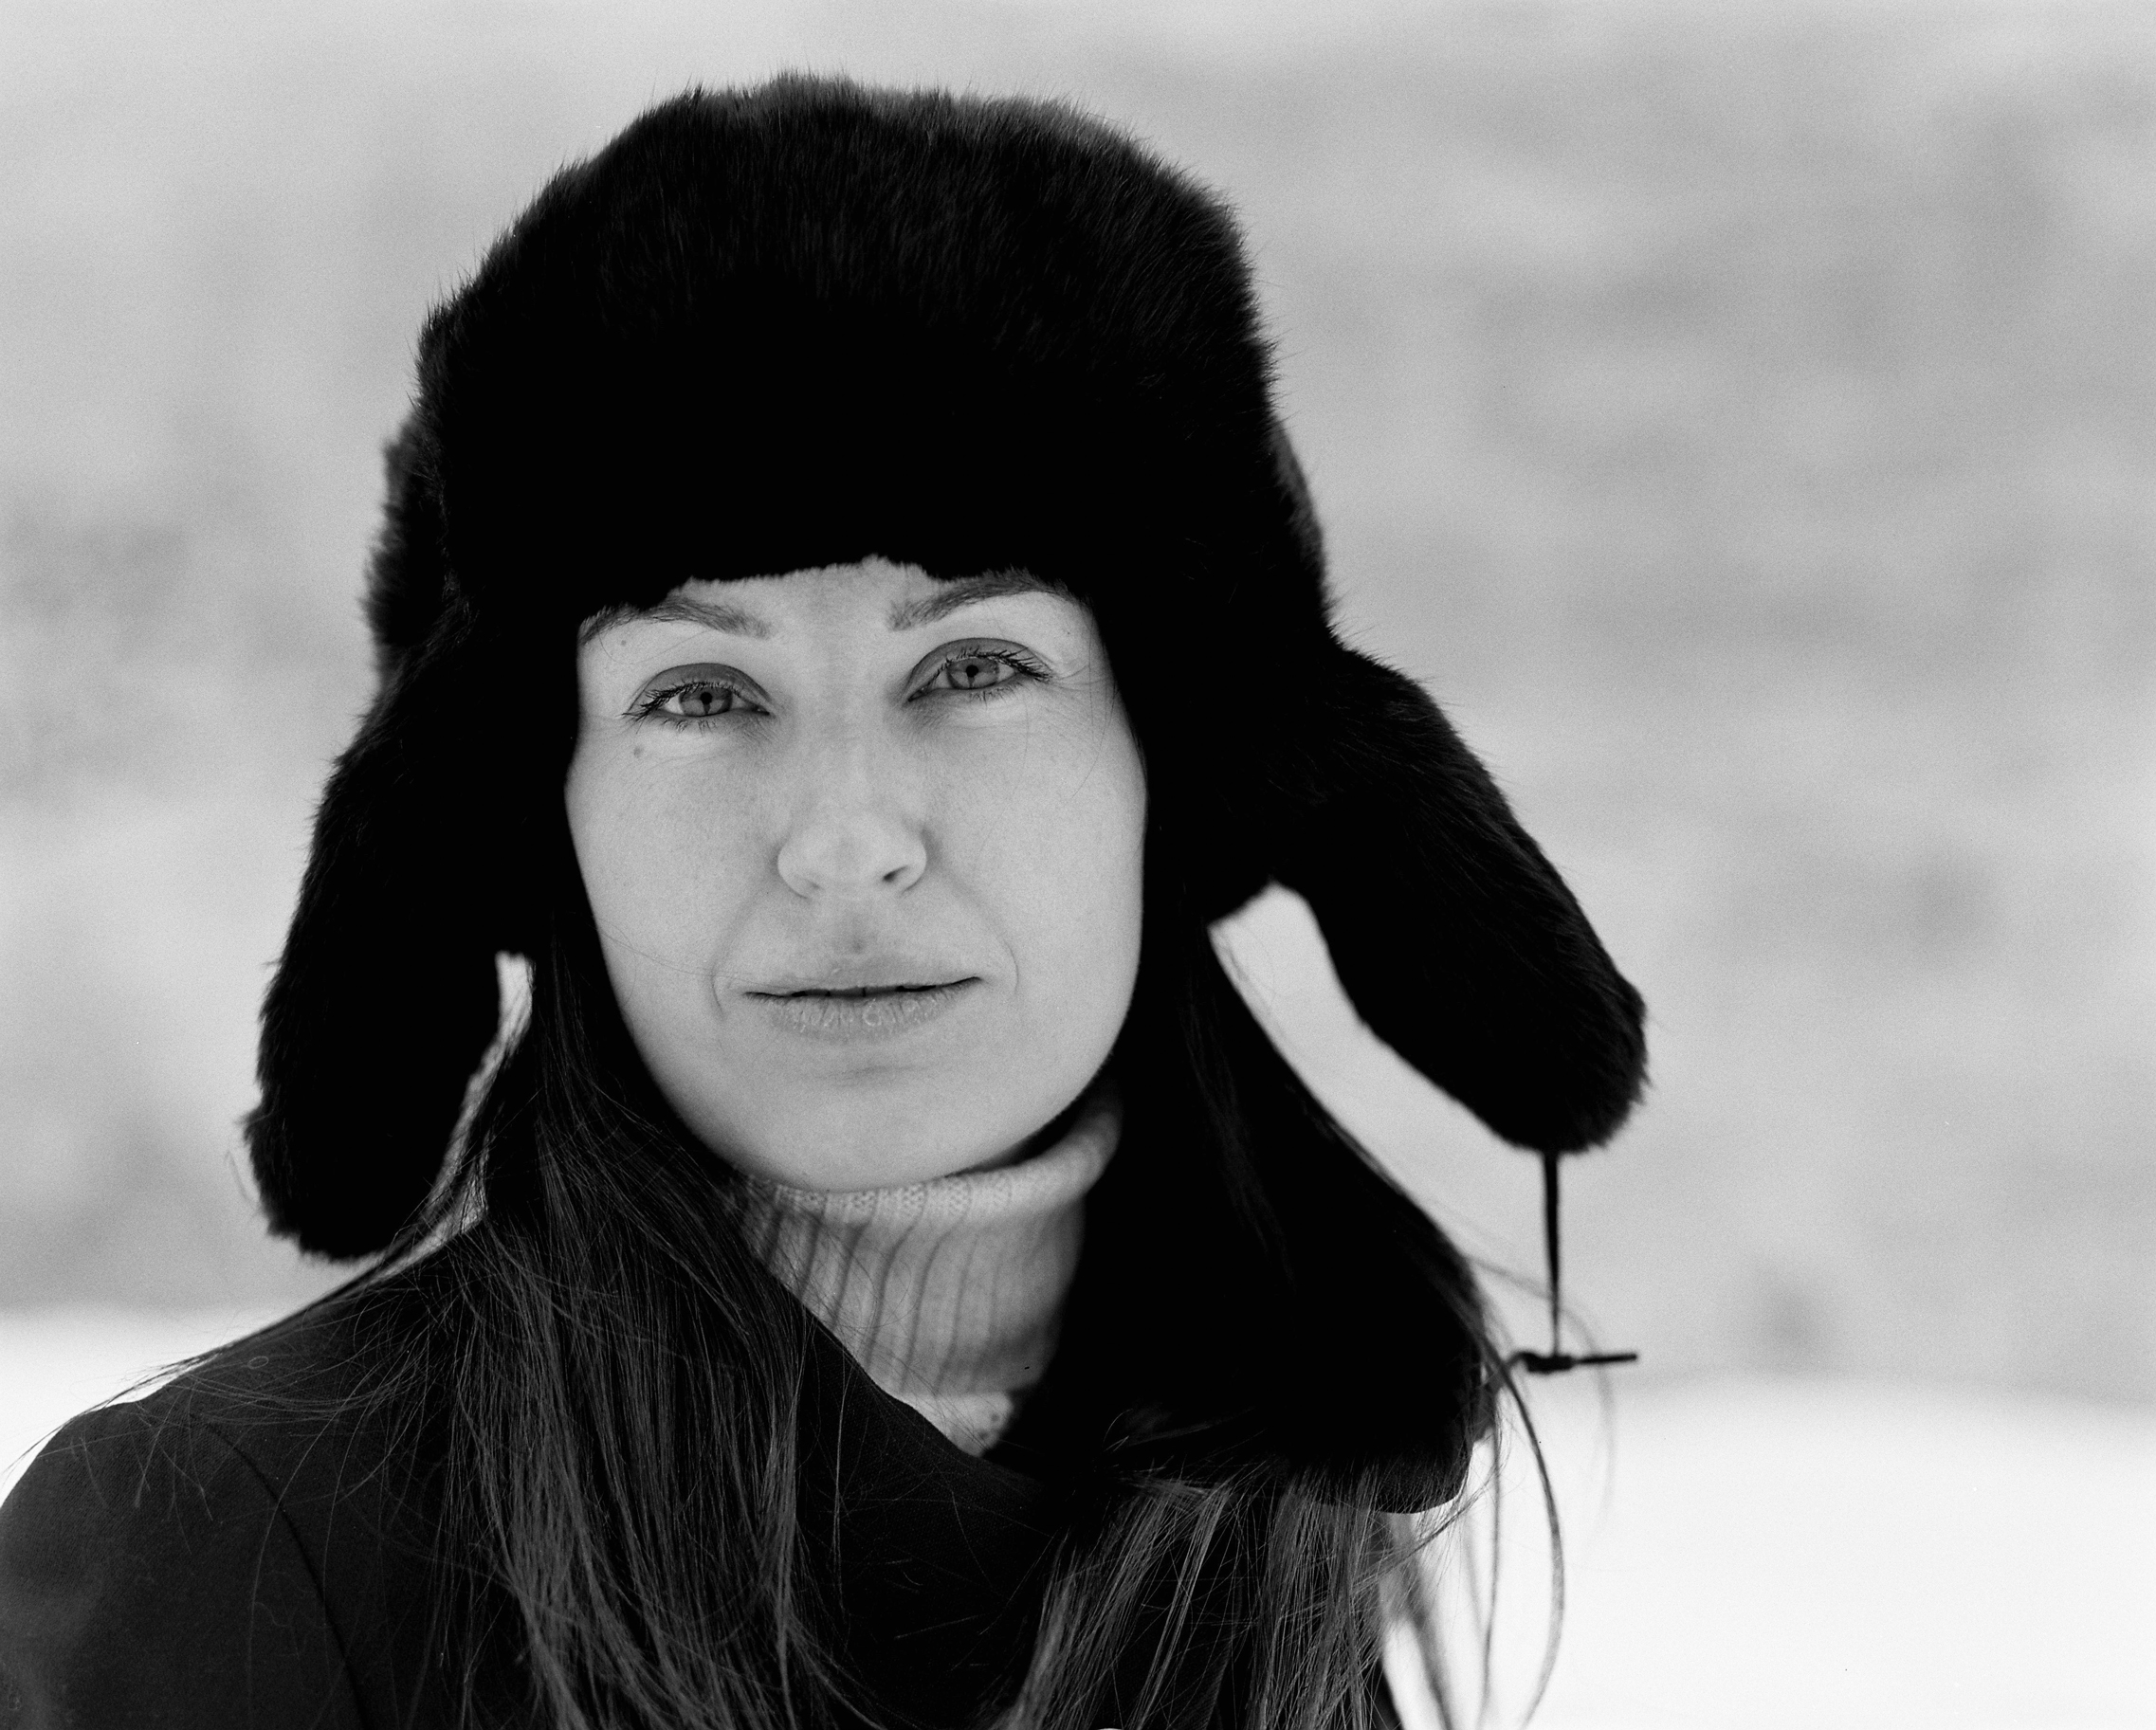  Winter portrait shoot by Dmitry Serostanov 